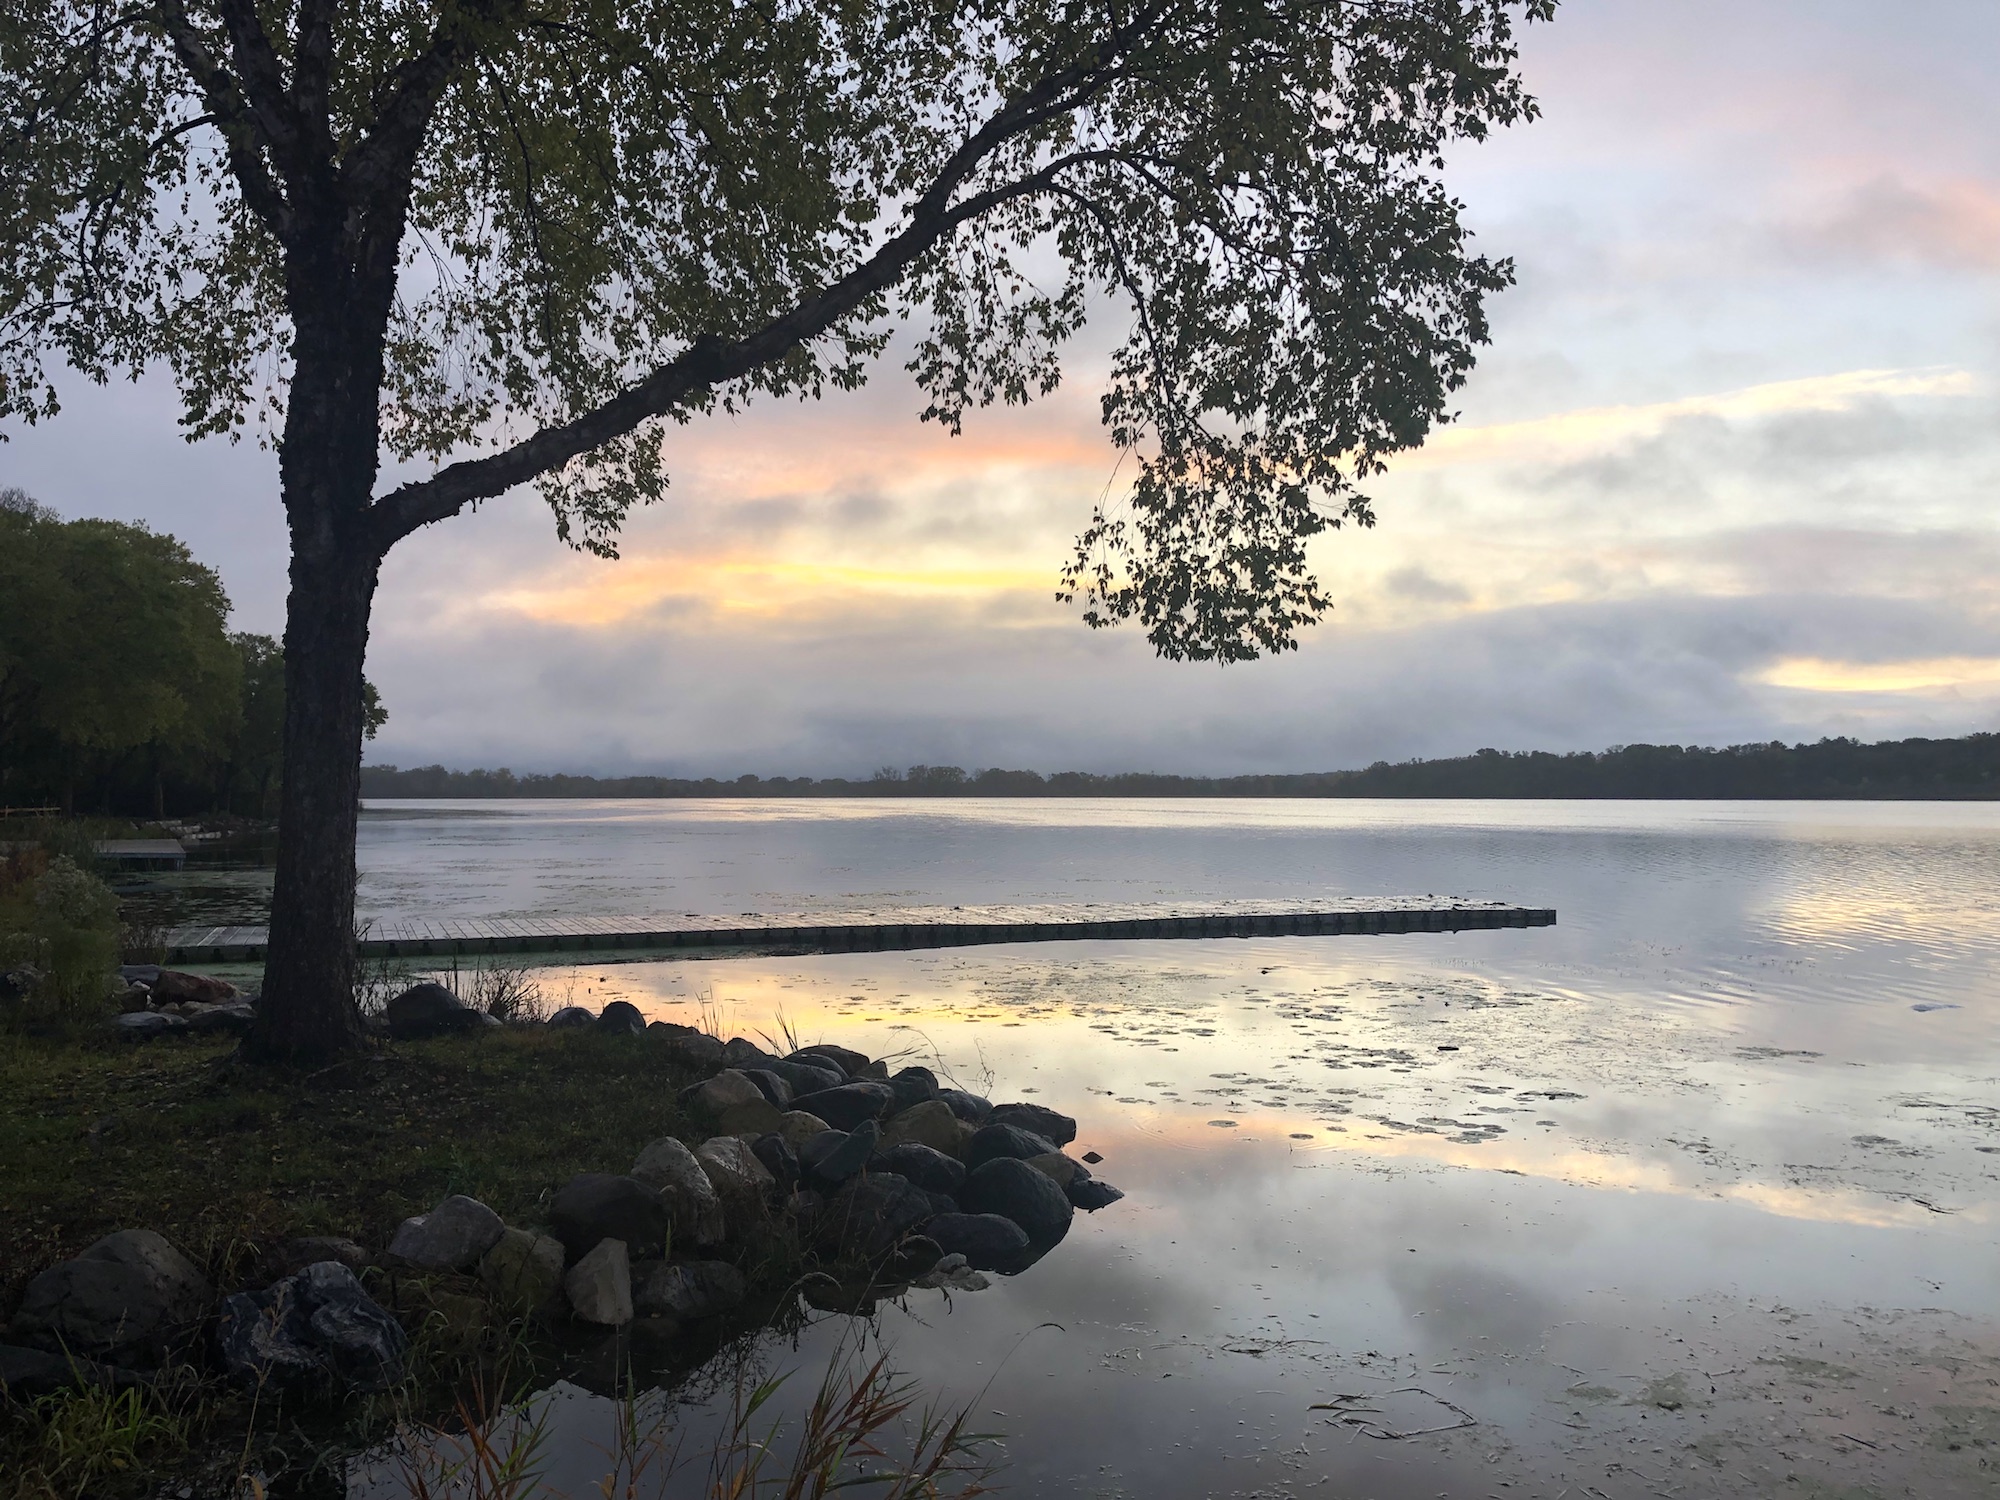 Lake Wingra on October 3, 2019.